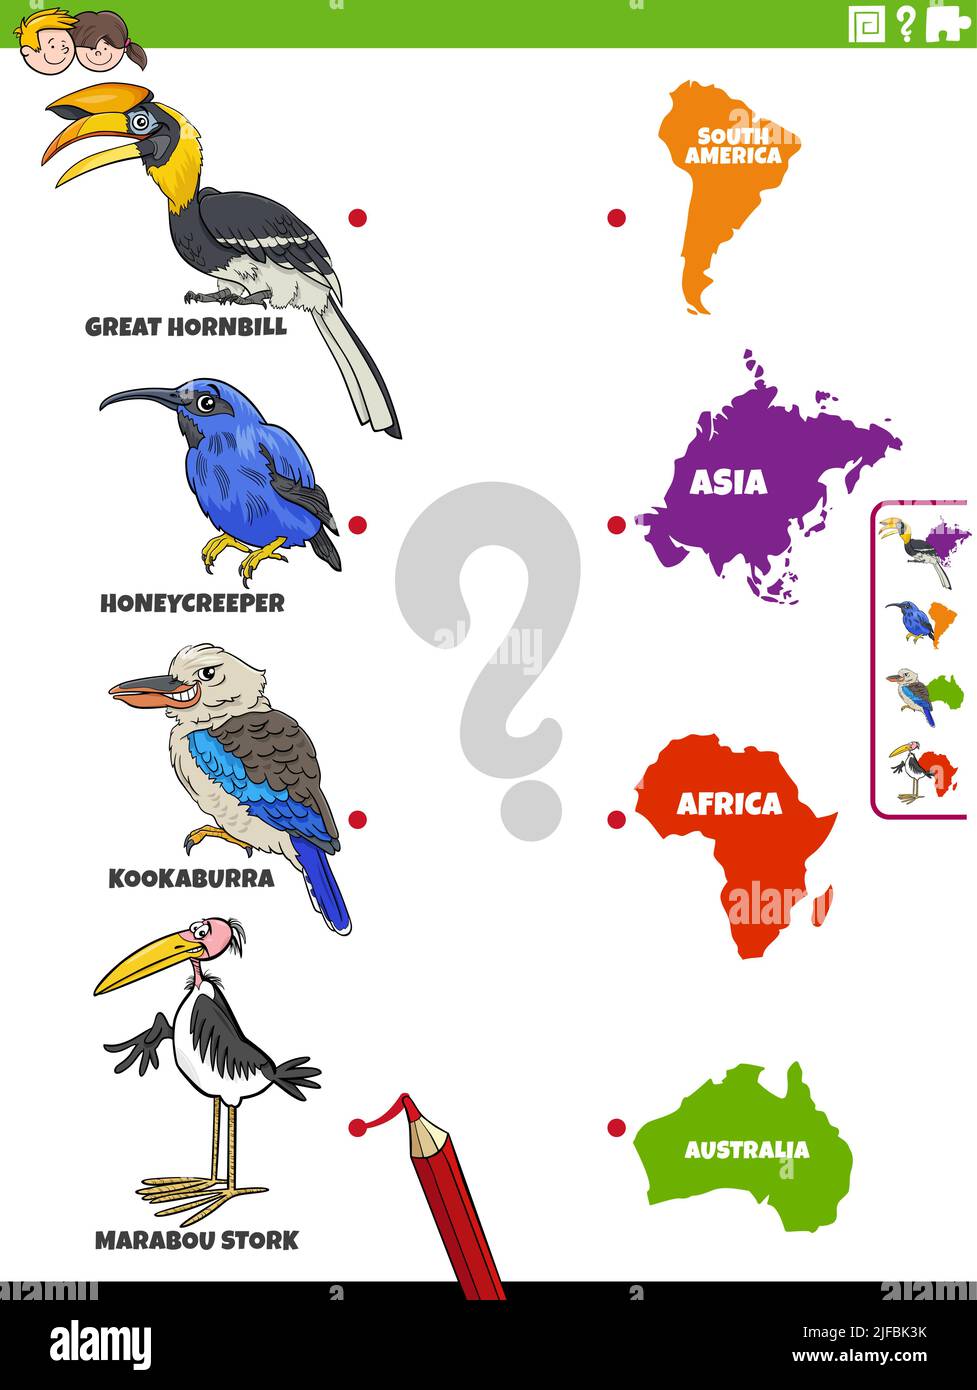 Cartoon Illustration der pädagogischen Matching-Aufgabe mit Vögeln Tierarten Charaktere und Kontinent Formen Stock Vektor